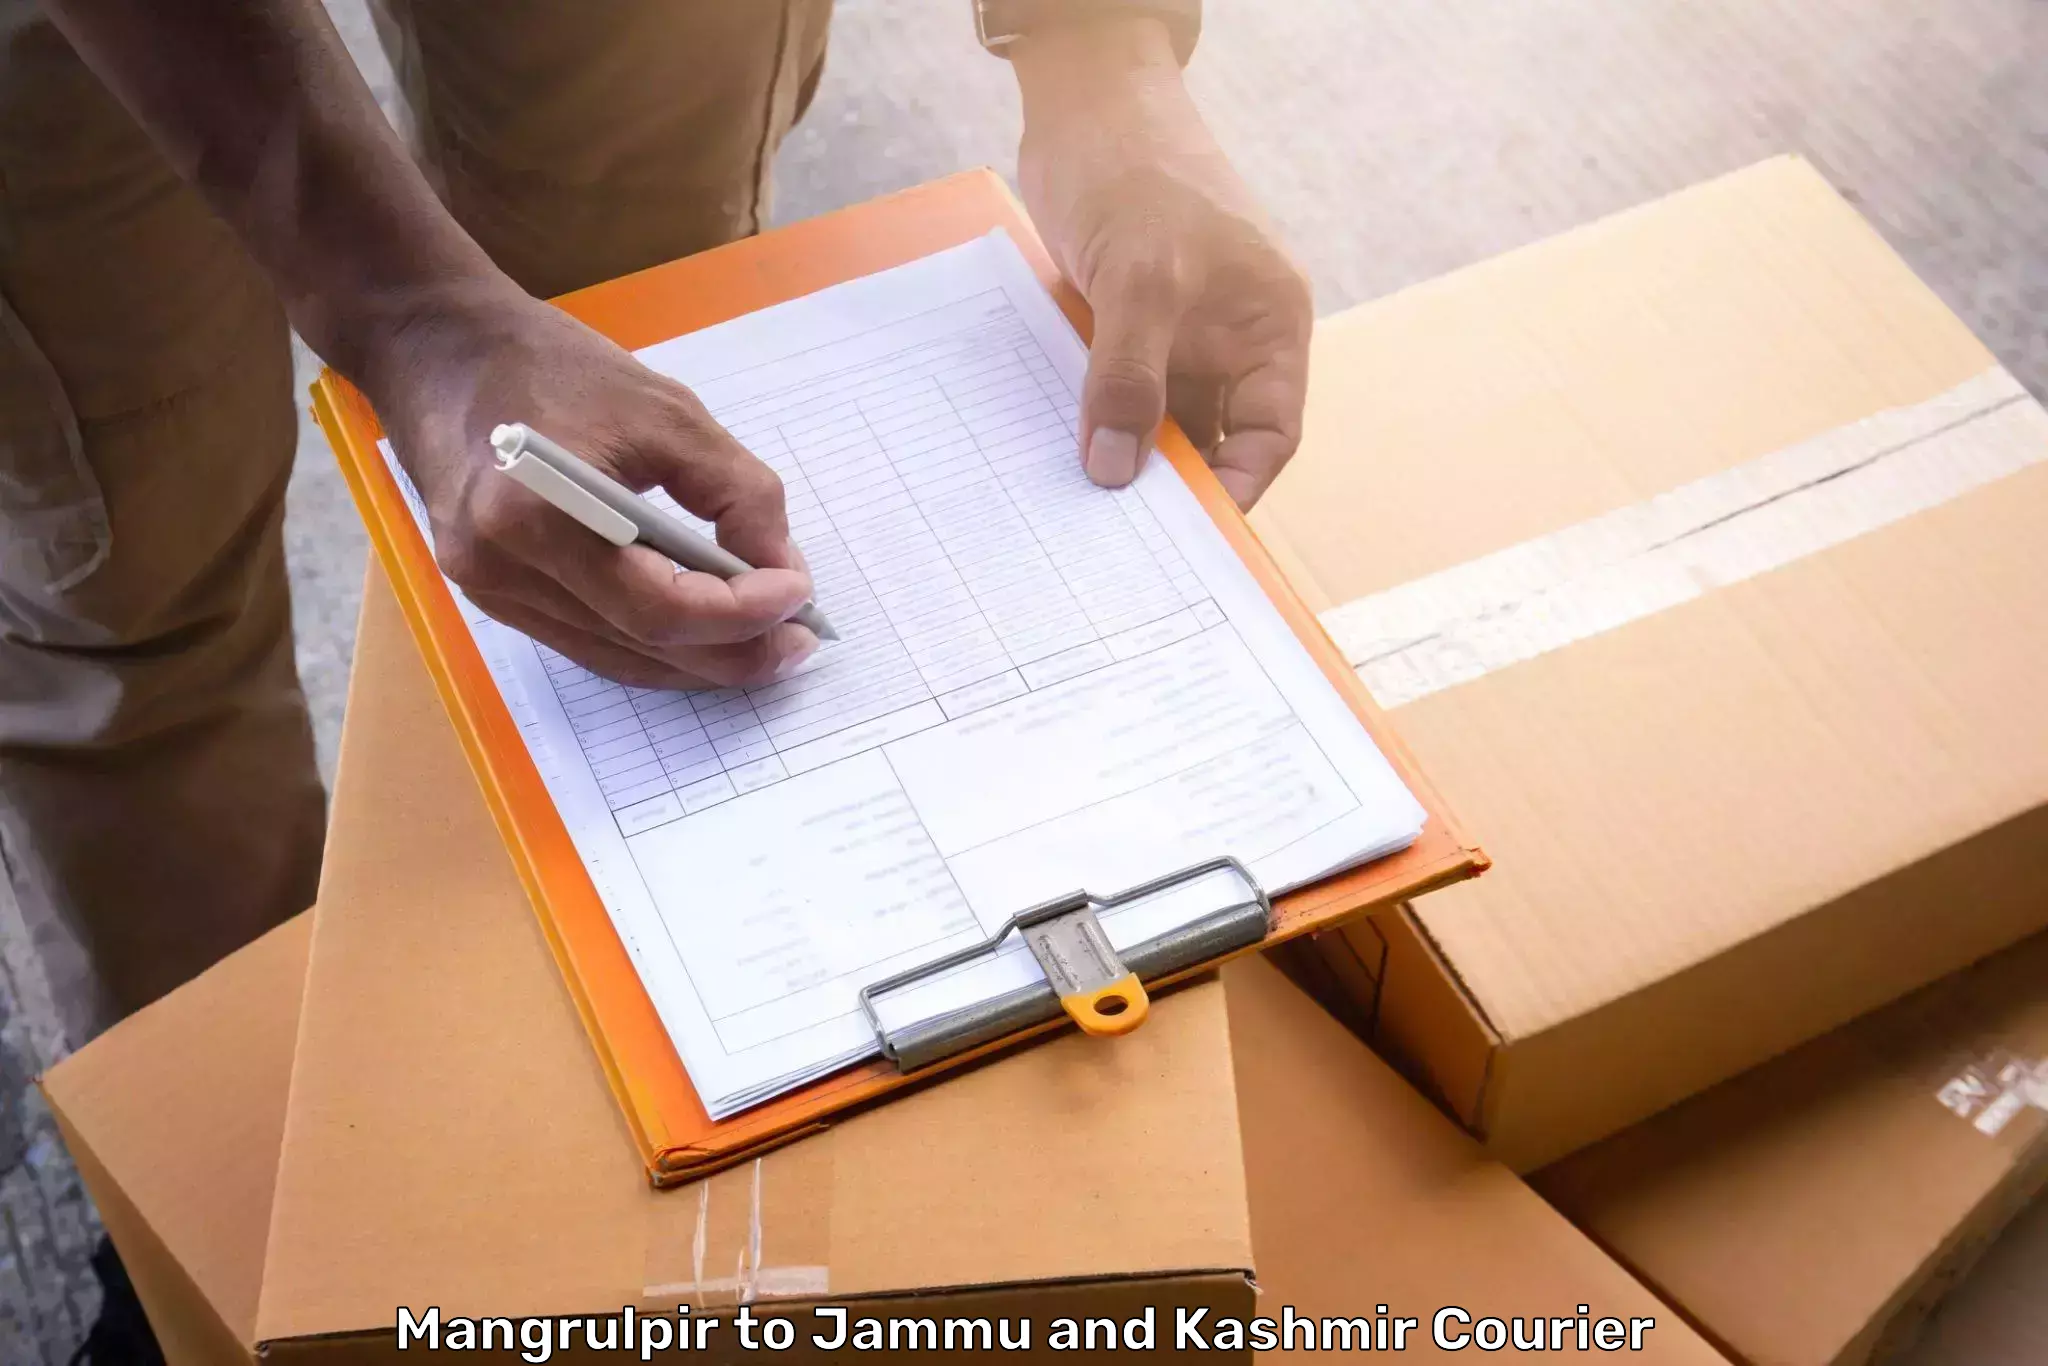 Luggage delivery network Mangrulpir to Bhaderwah